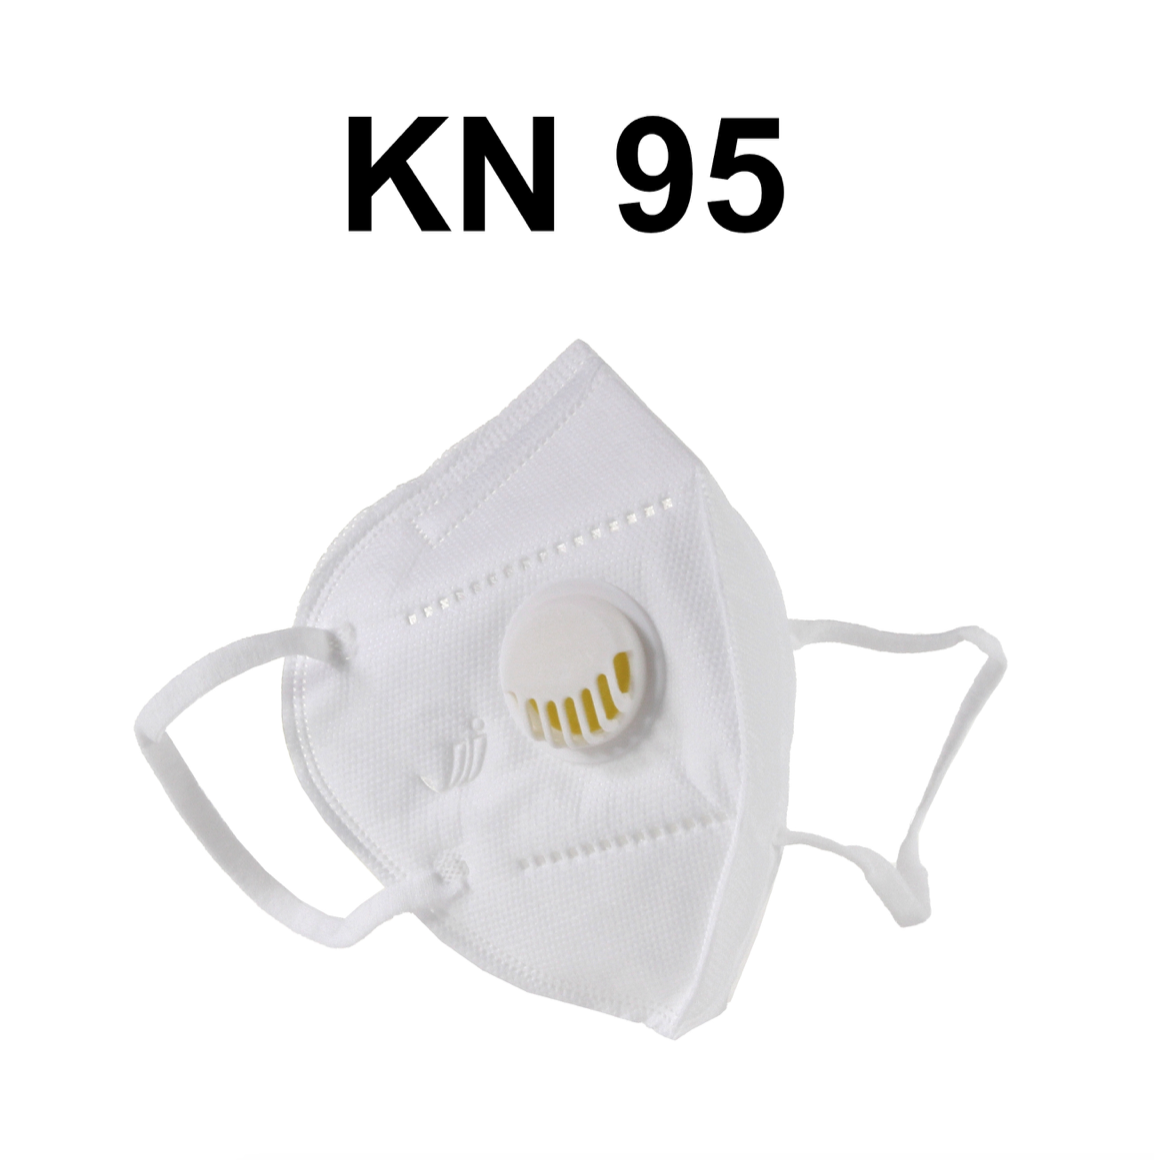 KN95 Mundschutz Atemschutz mit Filter Maske 1 Stück 95% Filterleistung FPP2 vergleichbar